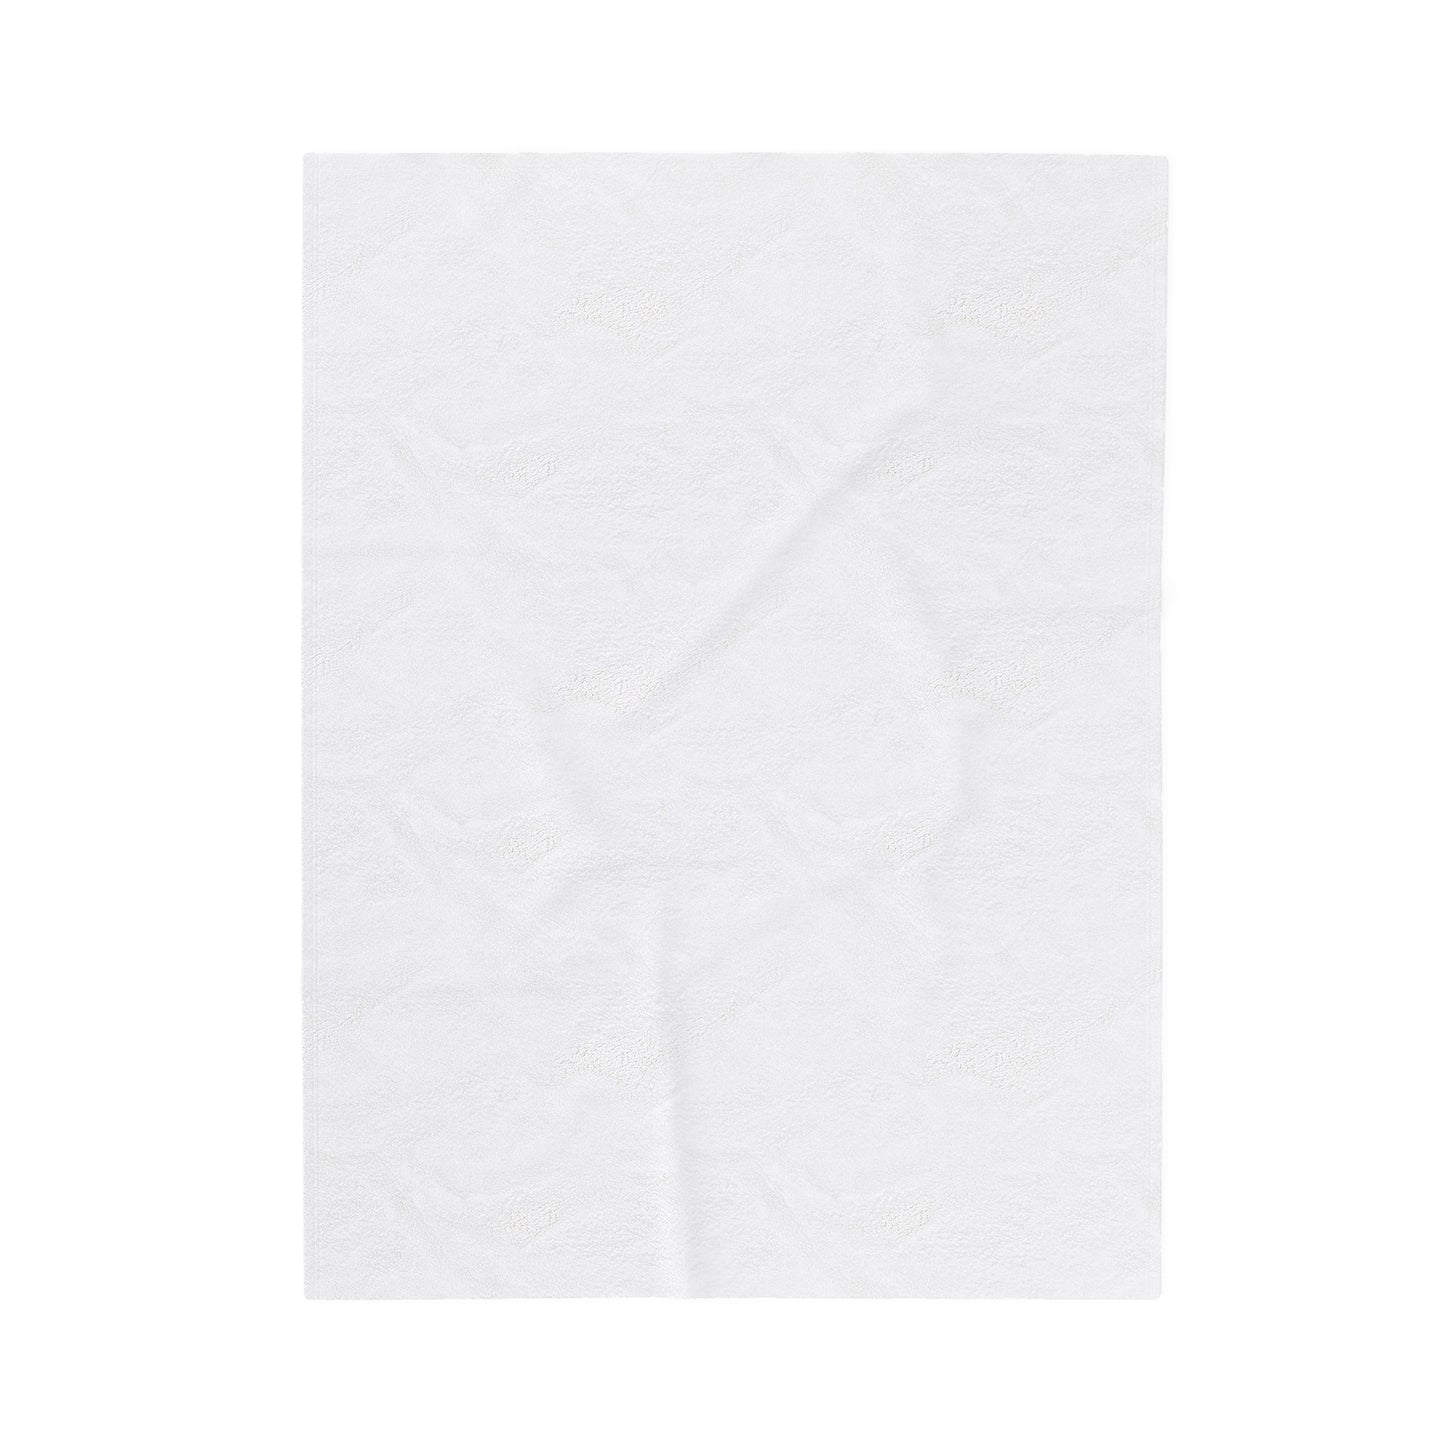 Velveteen Plush Blanket in "Retro-delic"